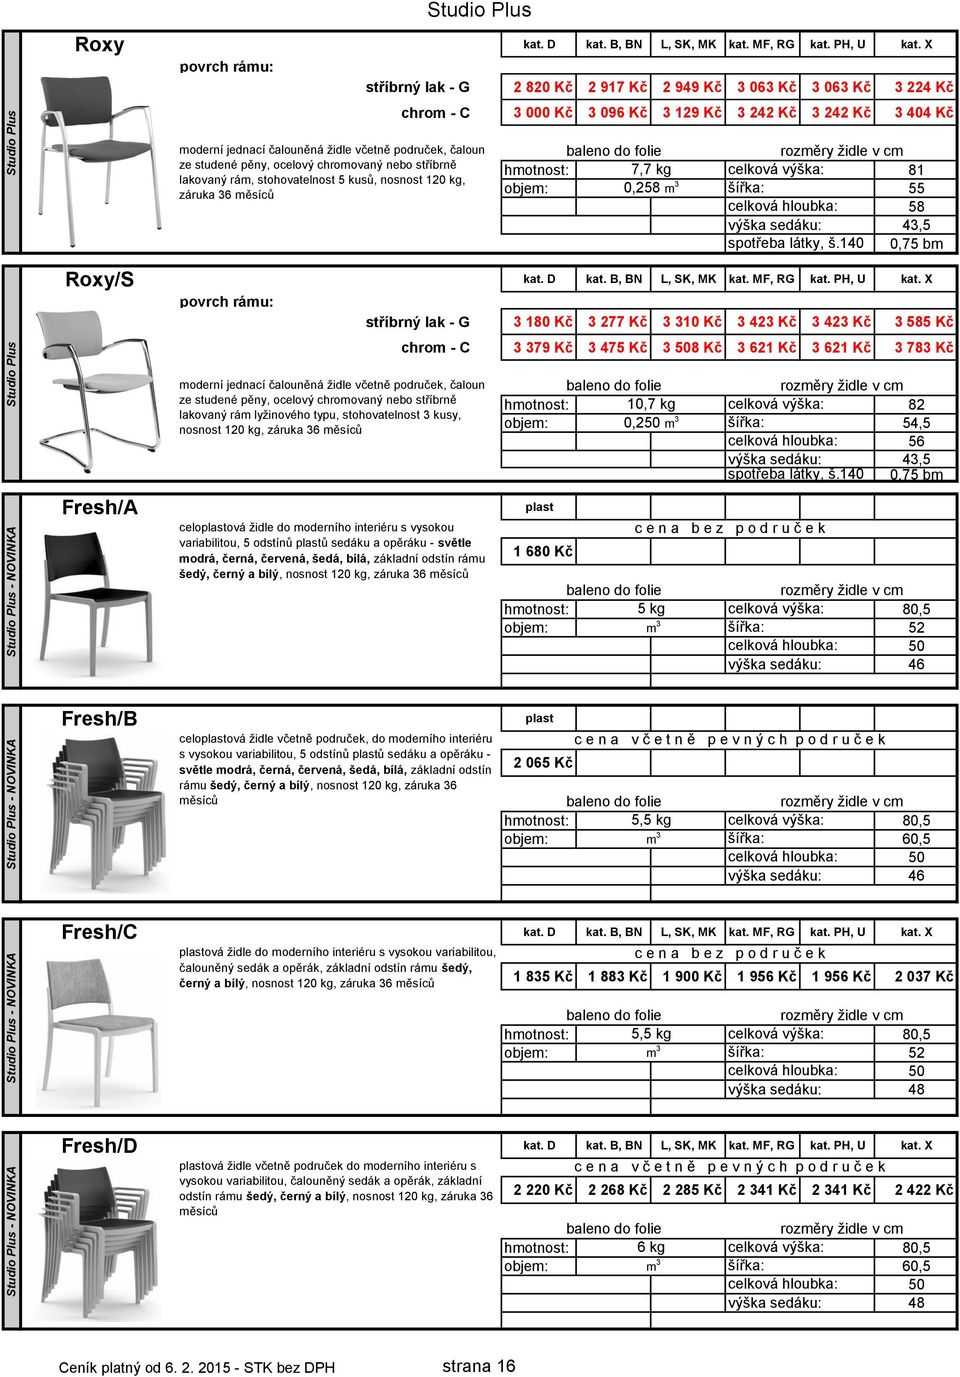 3242 3404 moderní jednací čalouněná židle včetně područek, čaloun ze studené pěny, ocelový chromovaný nebo stříbrně 7,7 kg celková výška: 81 lakovaný rám, stohovatelnost 5 kusů, nosnost 120 kg, 0,258